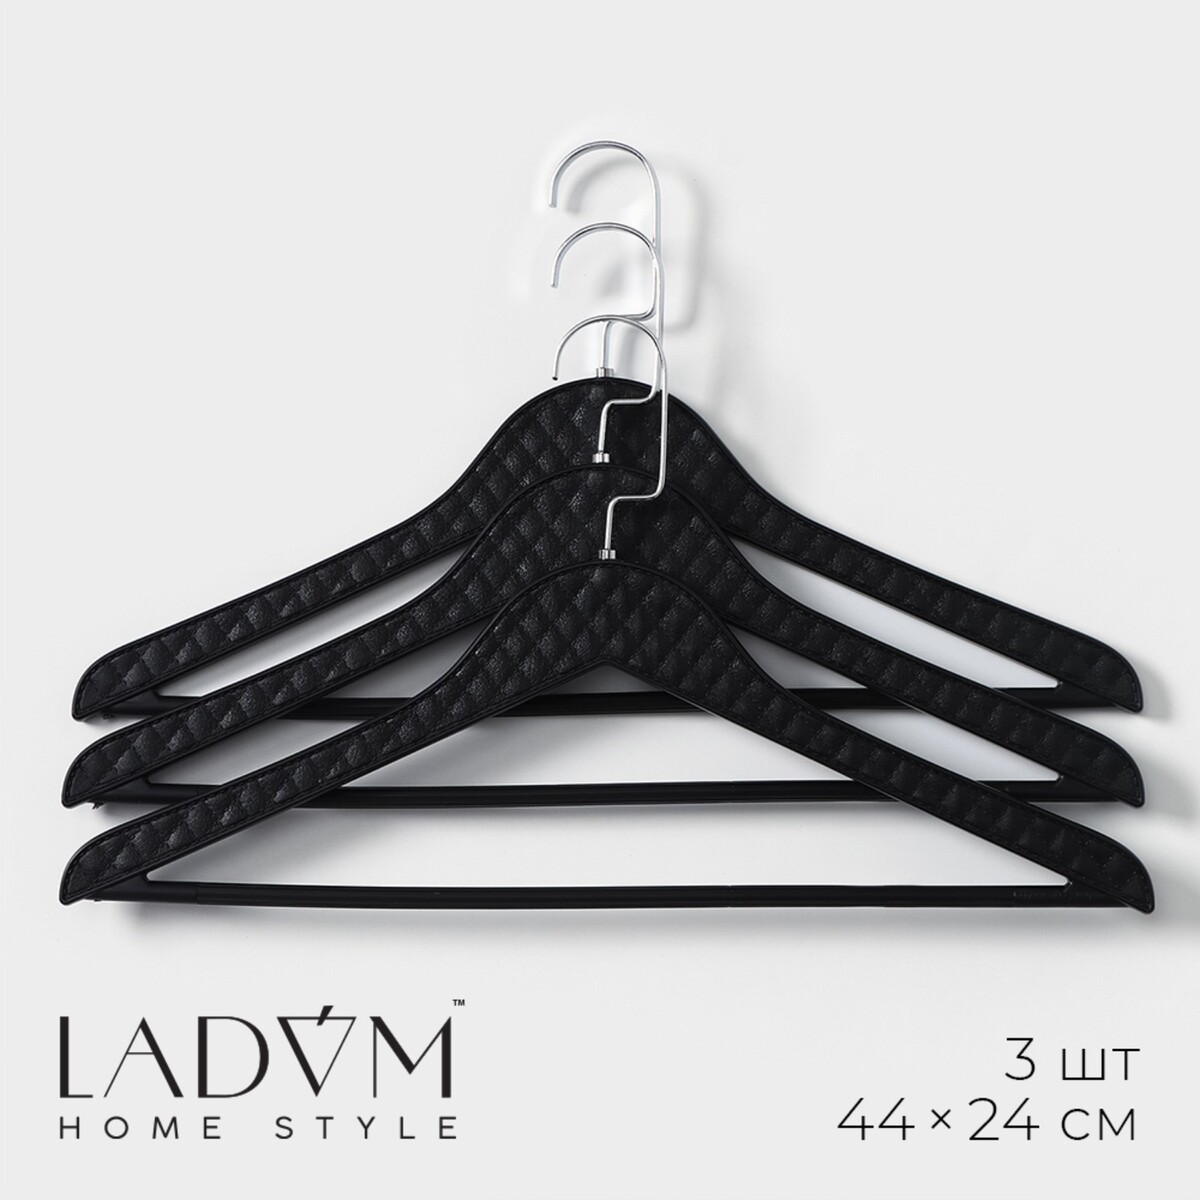 Плечики - вешалки для одежды ladо́m eliot, 44×24 см, 3 шт, цвет черный